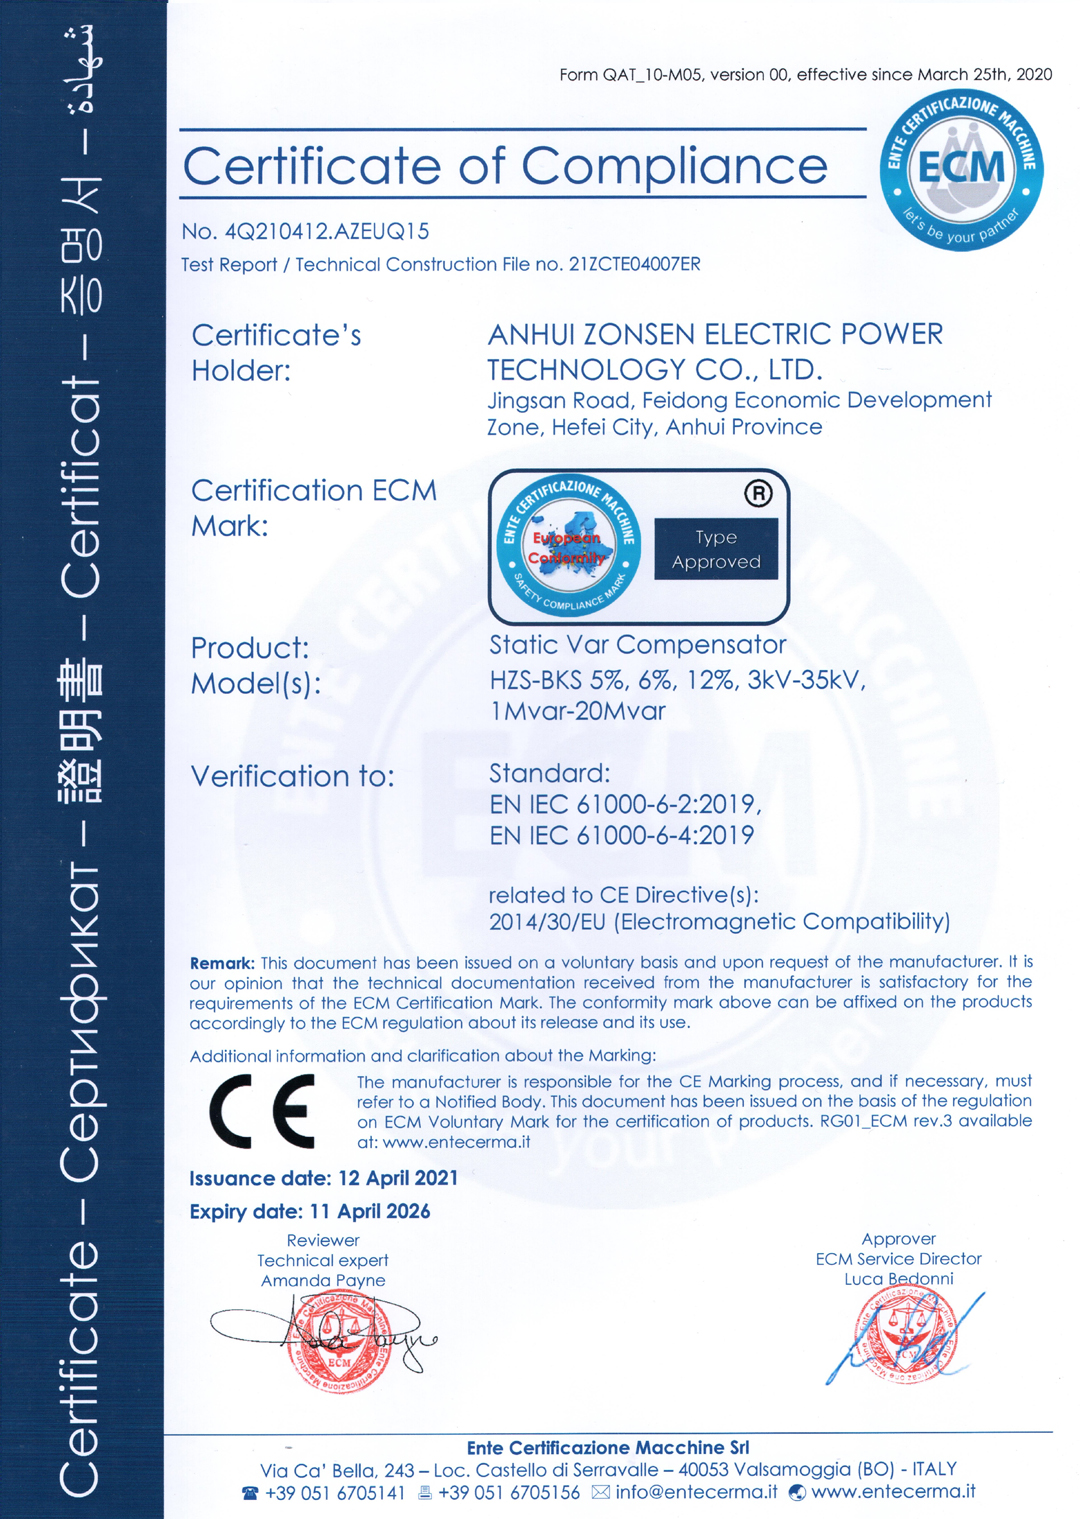 ECM SVC Certification